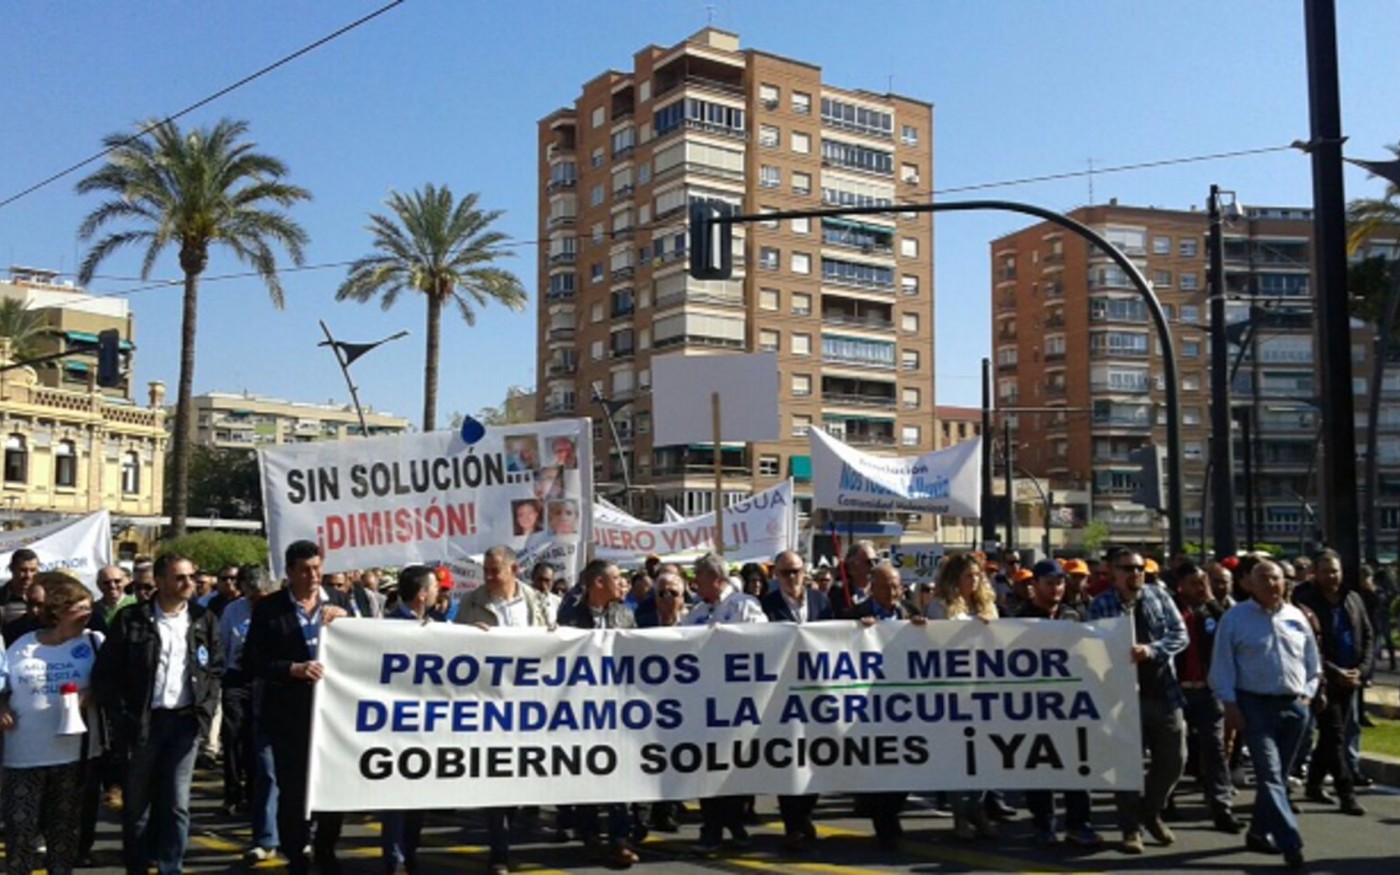 Imágenes de la protesta que ha colapsado el centro de Murcia